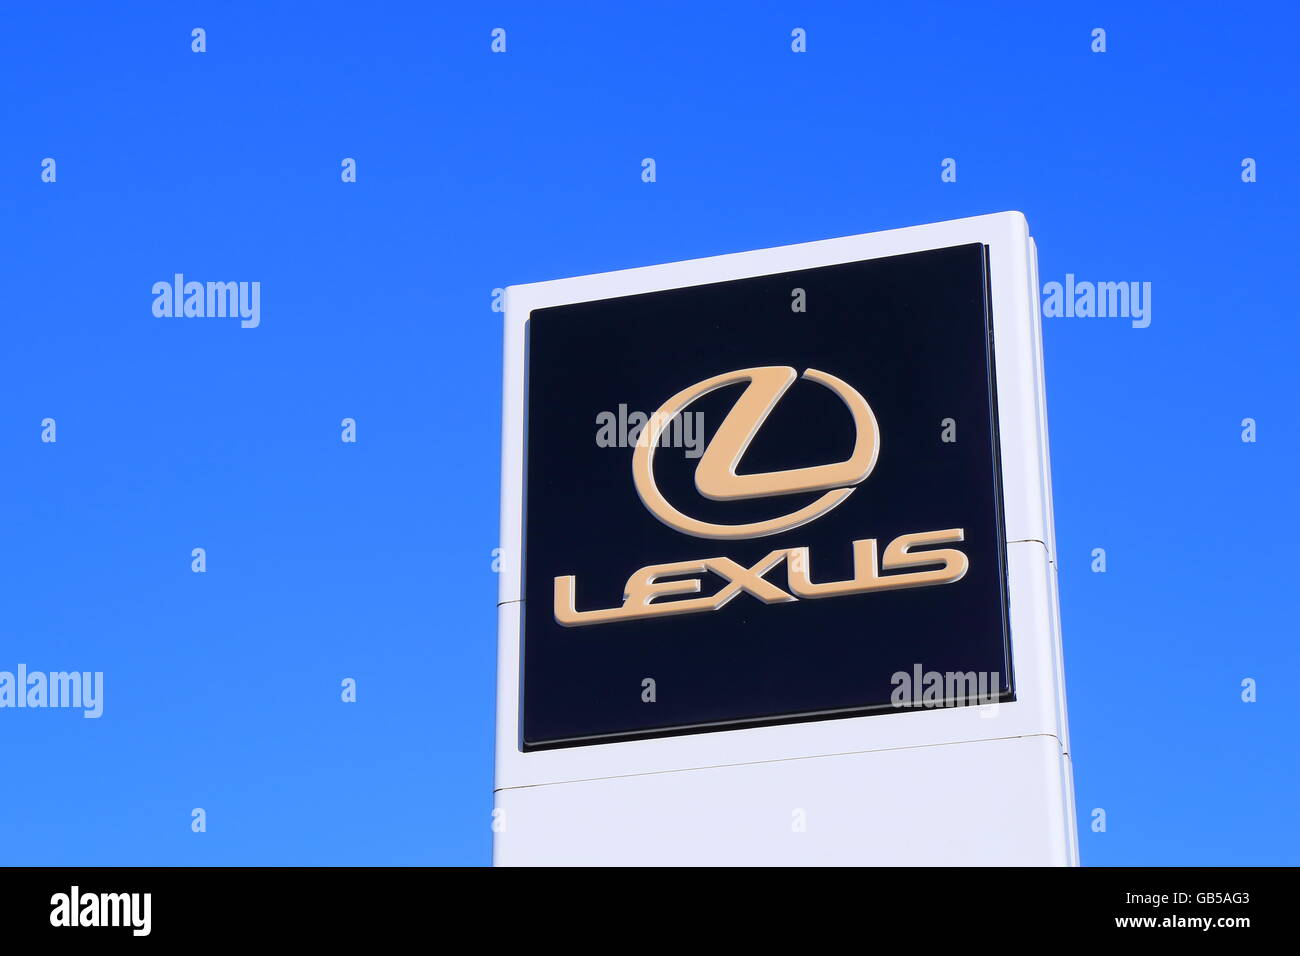 Lexus car manufacturer Stock Photo